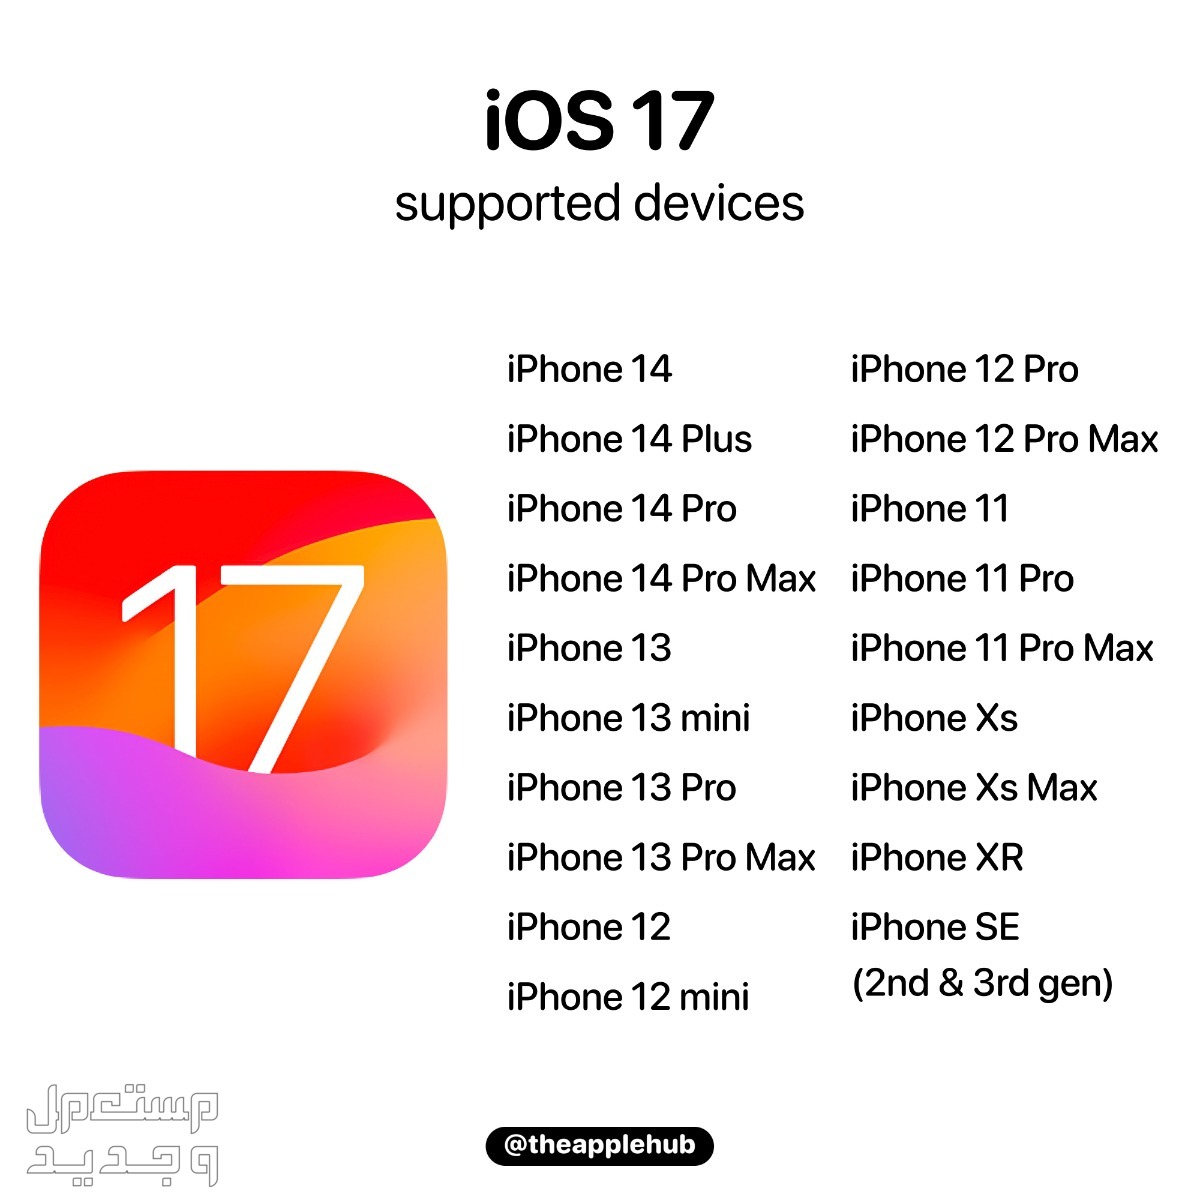 نظام iOS 17 لهواتف ايفون بمميزات جديدة تعرف عليها في البحرين